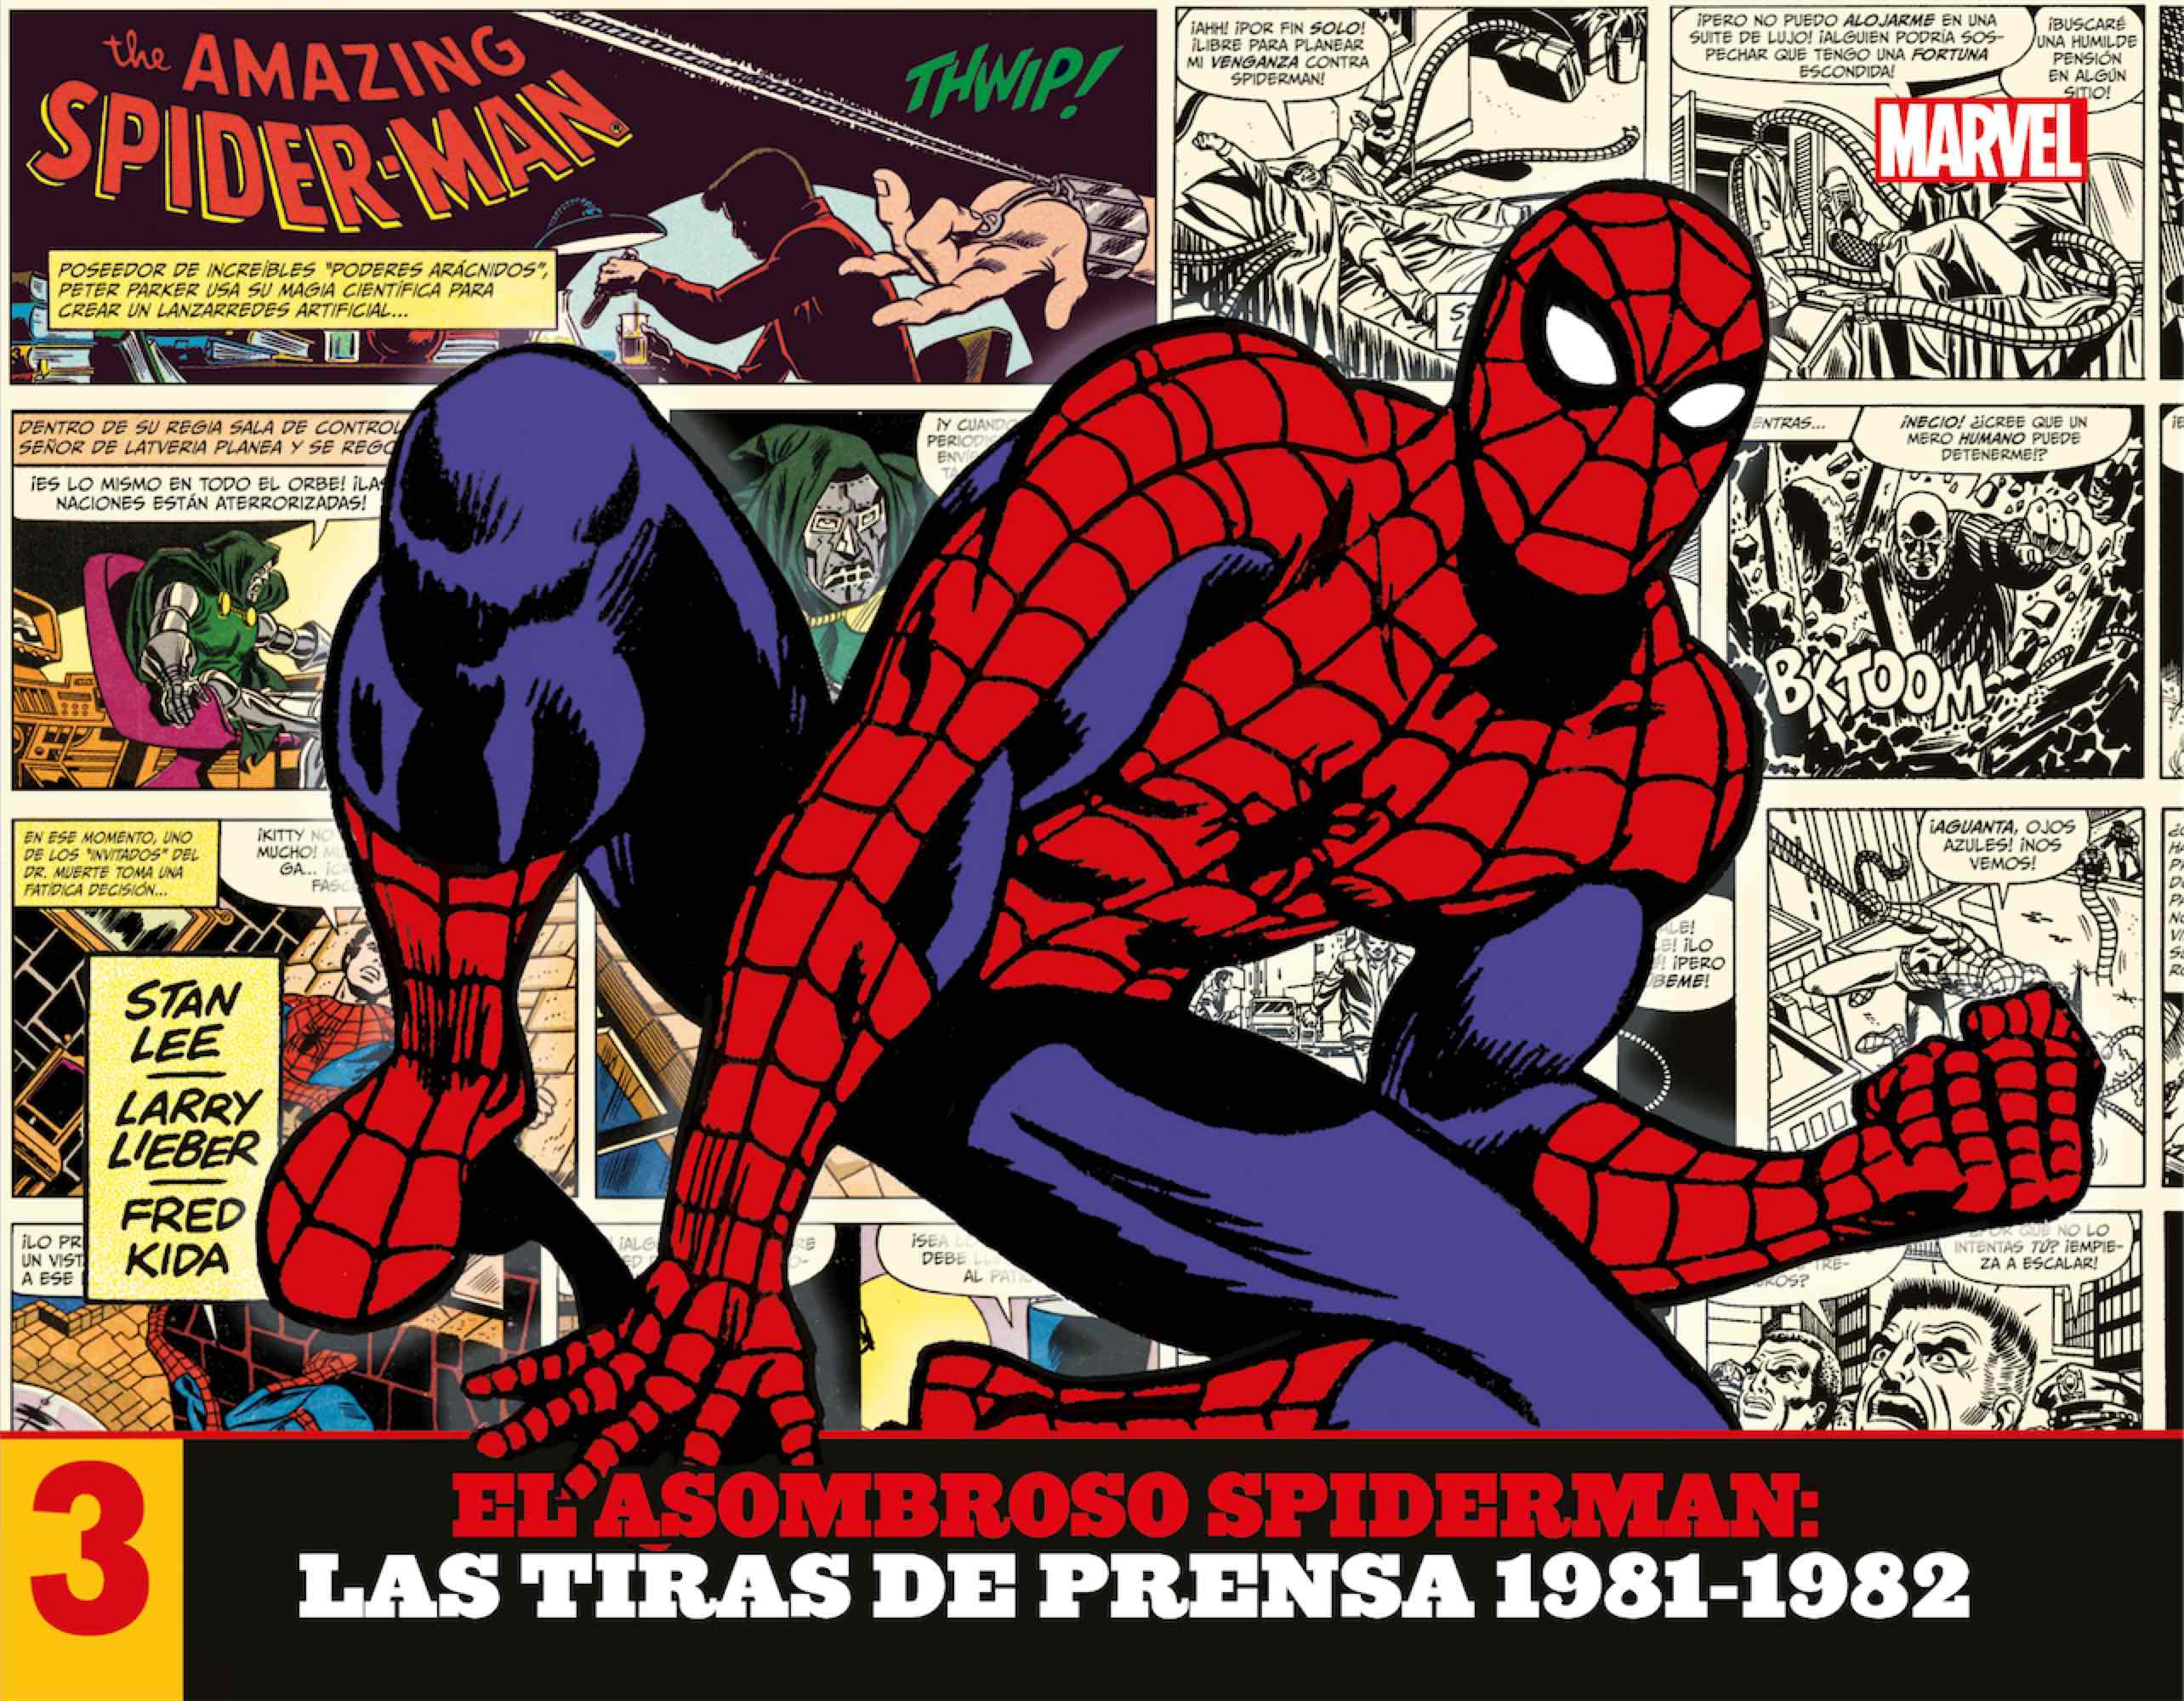 EL ASOMBROSO SPIDERMAN: LAS TIRAS DE PRENSA 03. 1981-1982